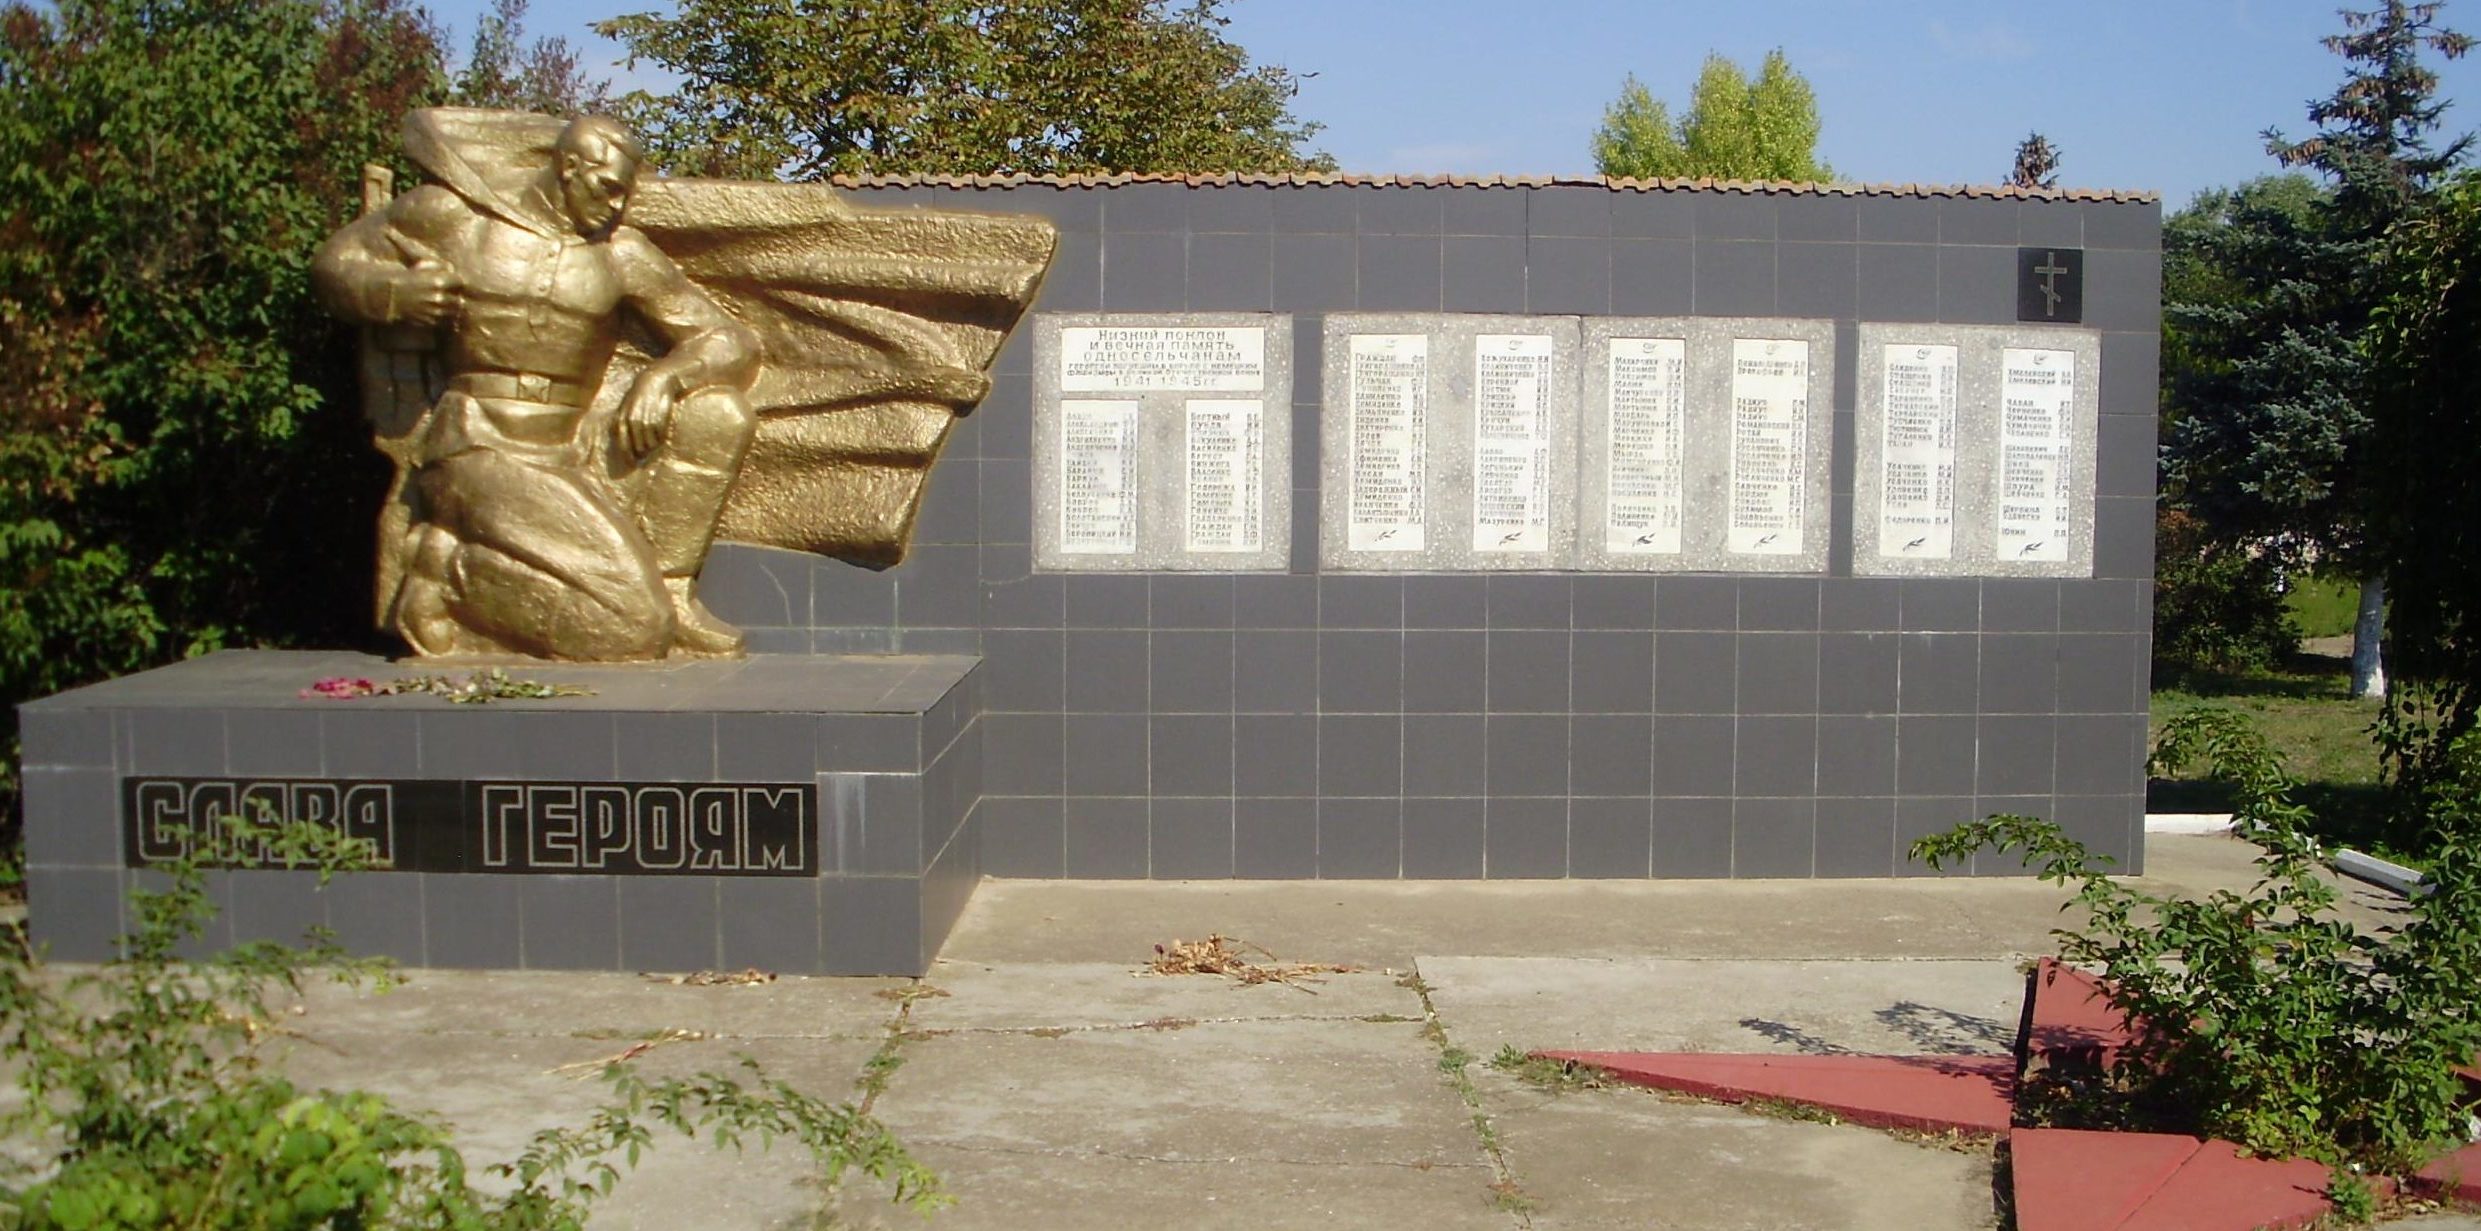 с. Бритовка Белгород-Днестровского р-на. Памятник жителям с. Бритовка и с. Папушой, погибших на войне.